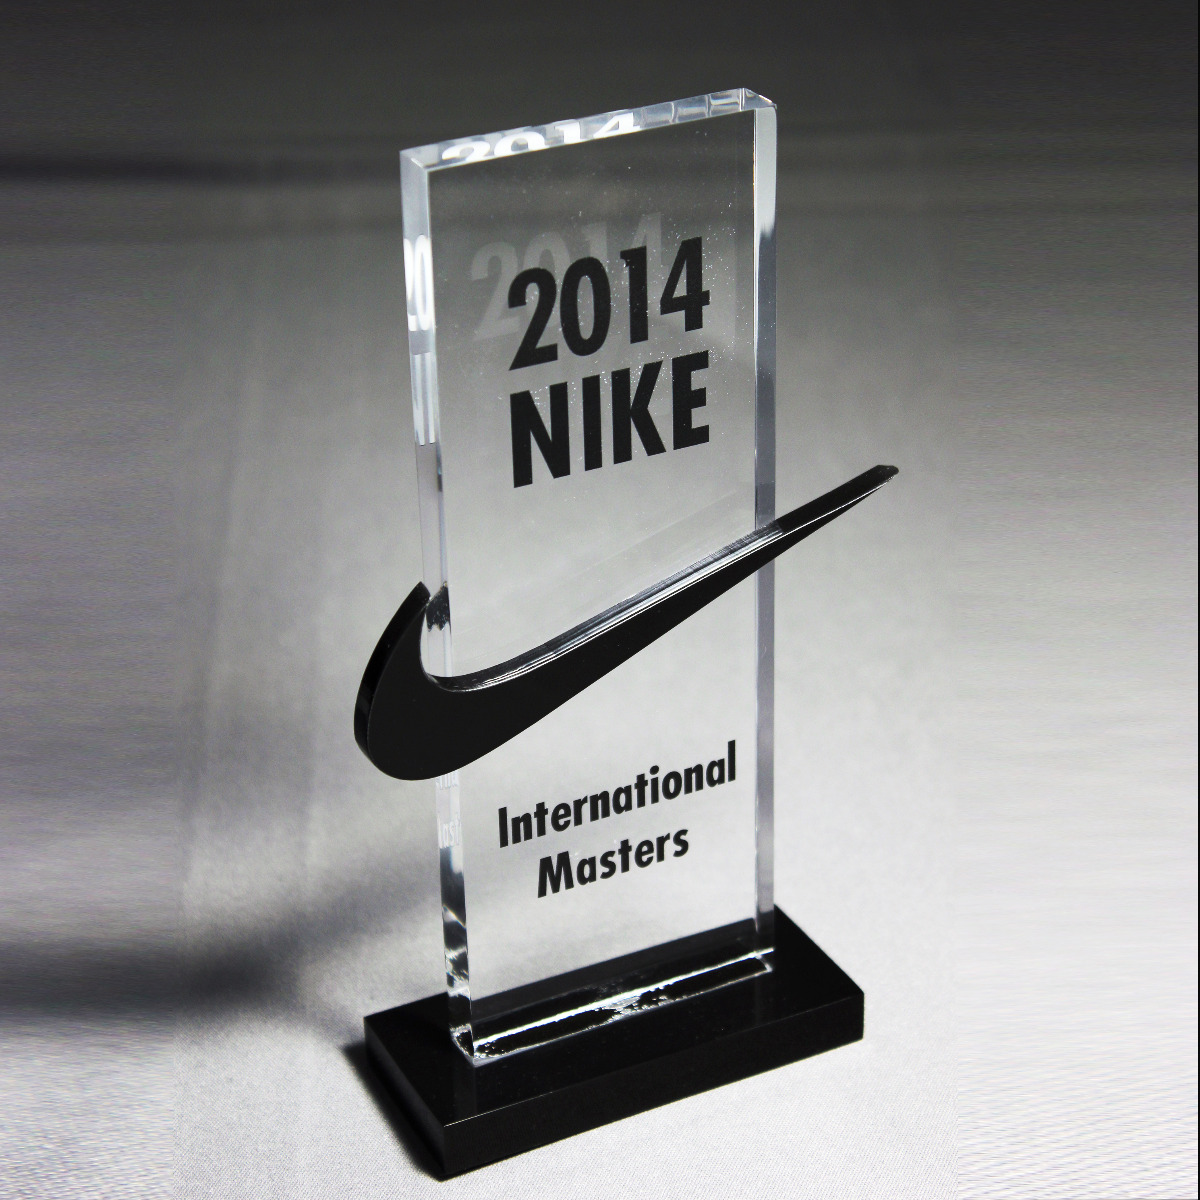 Custom acrylic Nike award with Nike on base